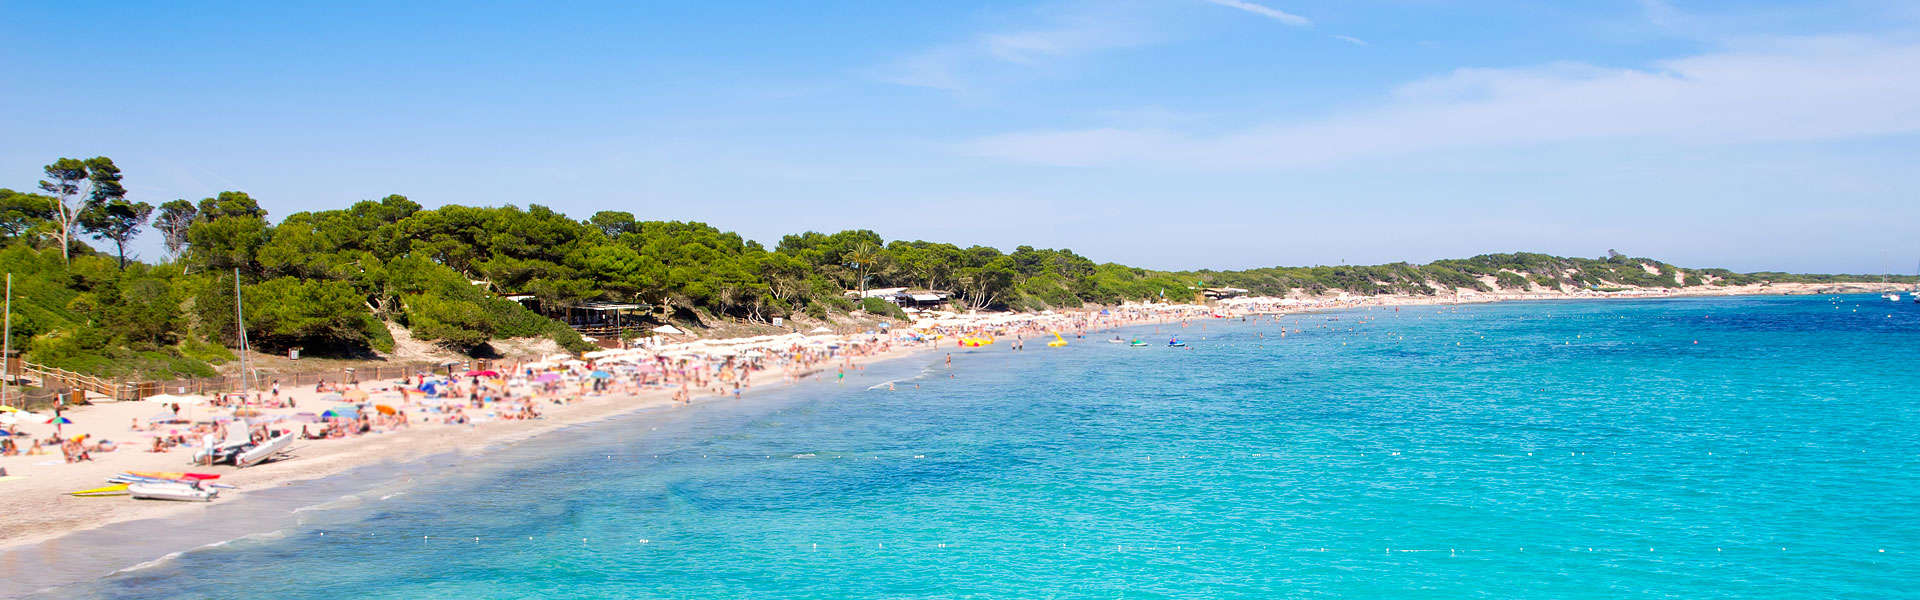 Freuen Sie sich auf Traumstrände! Ses Salines - Touristenmagnet im Ibiza Urlaub